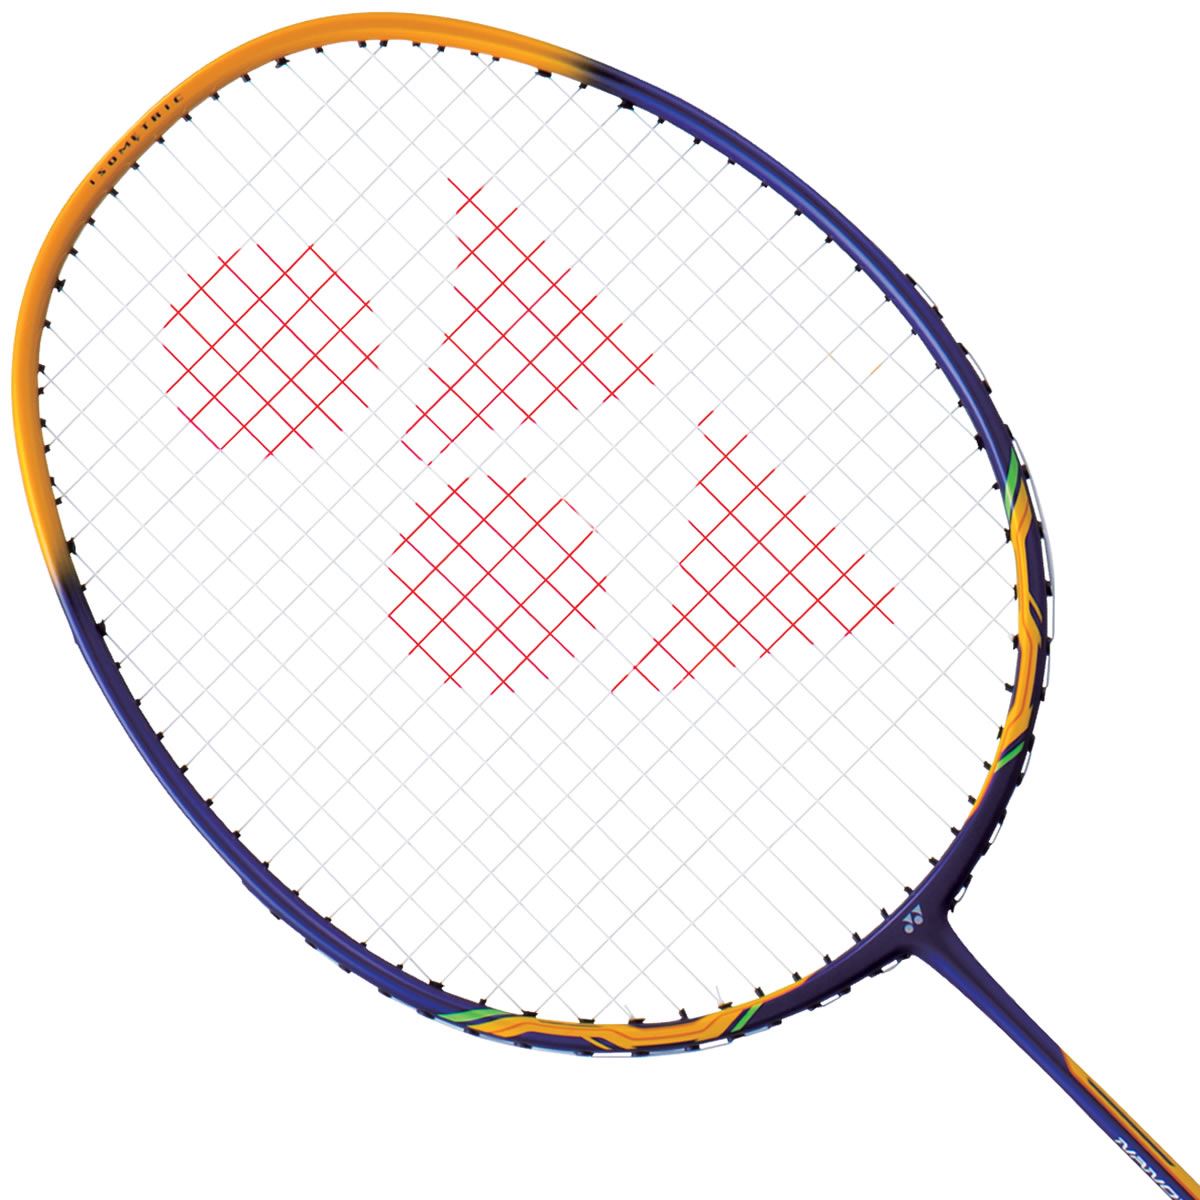 Yonex Nanoray 9 Badminton Racket - Royal Blue